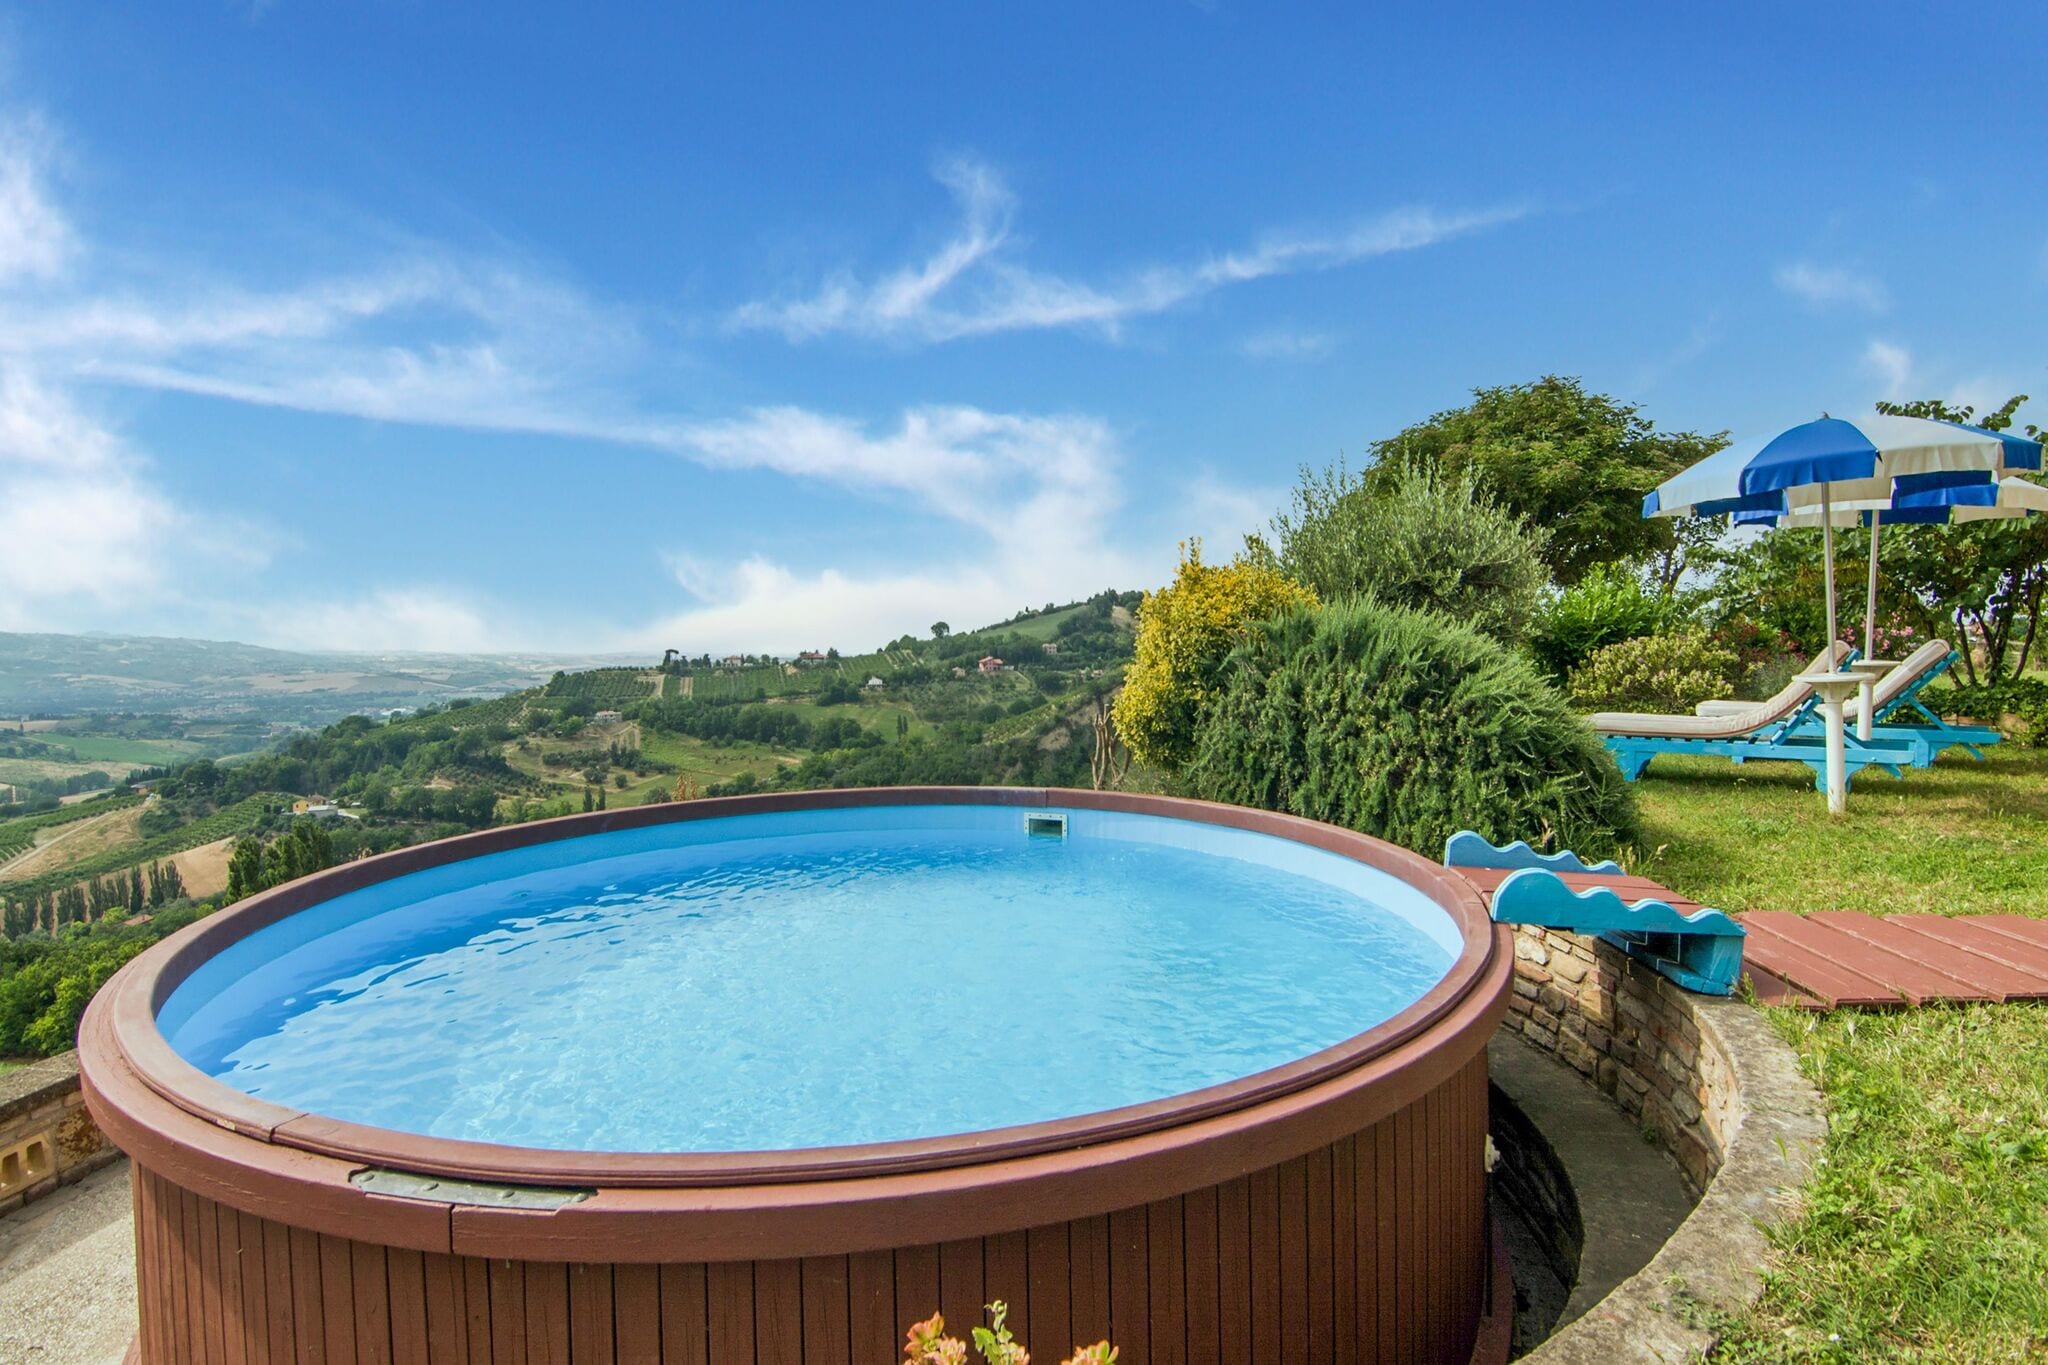 Belle maison de maître à Vallefoglia avec piscine